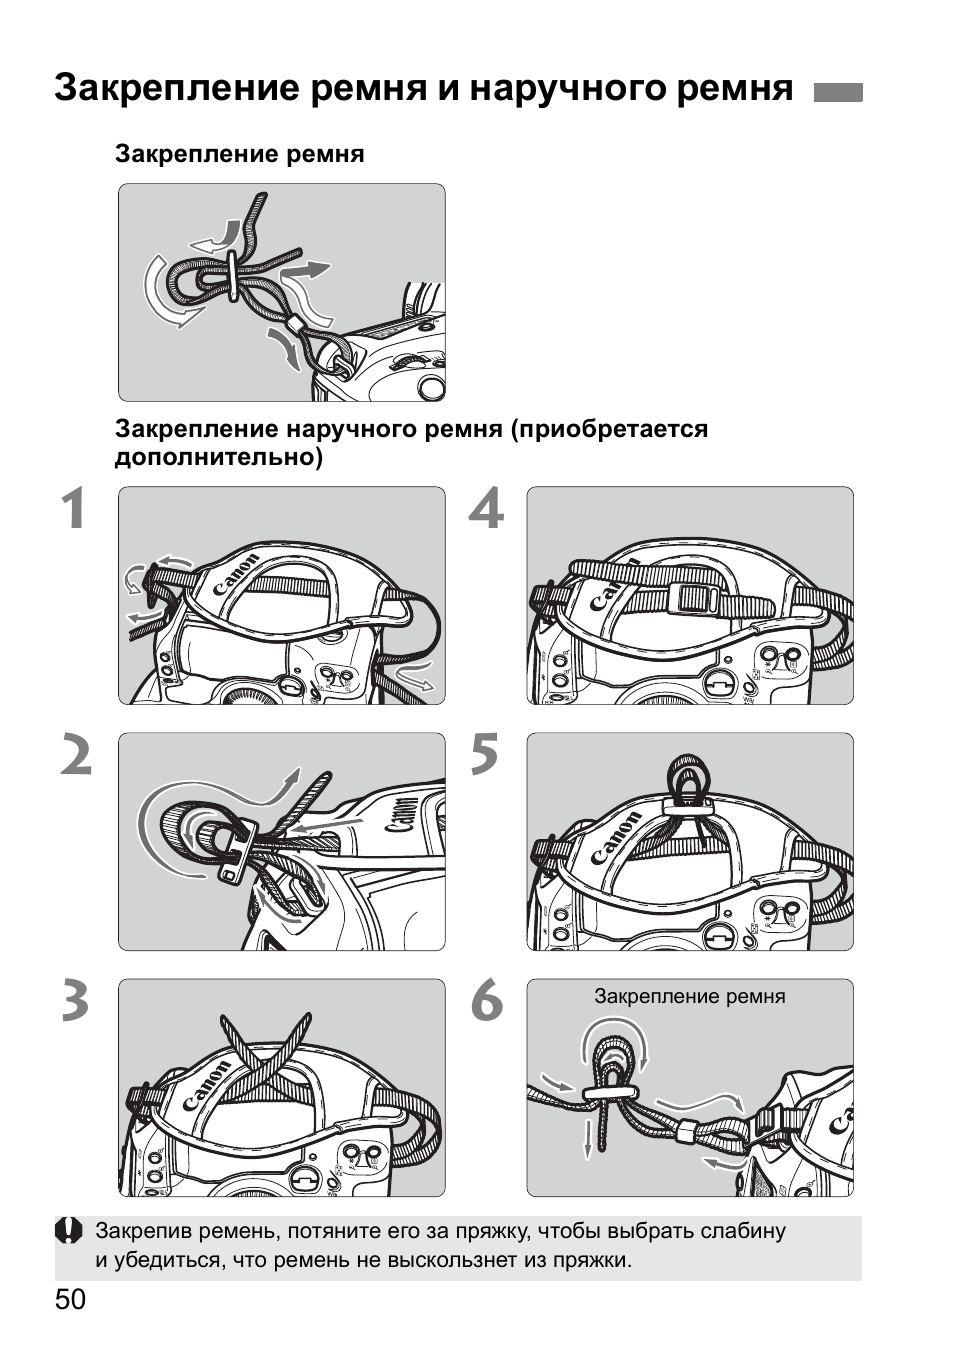 Закрепление ремня и наручного ремня | Инструкция по эксплуатации Canon EOS 1D Mark II N | Страница 50 / 196